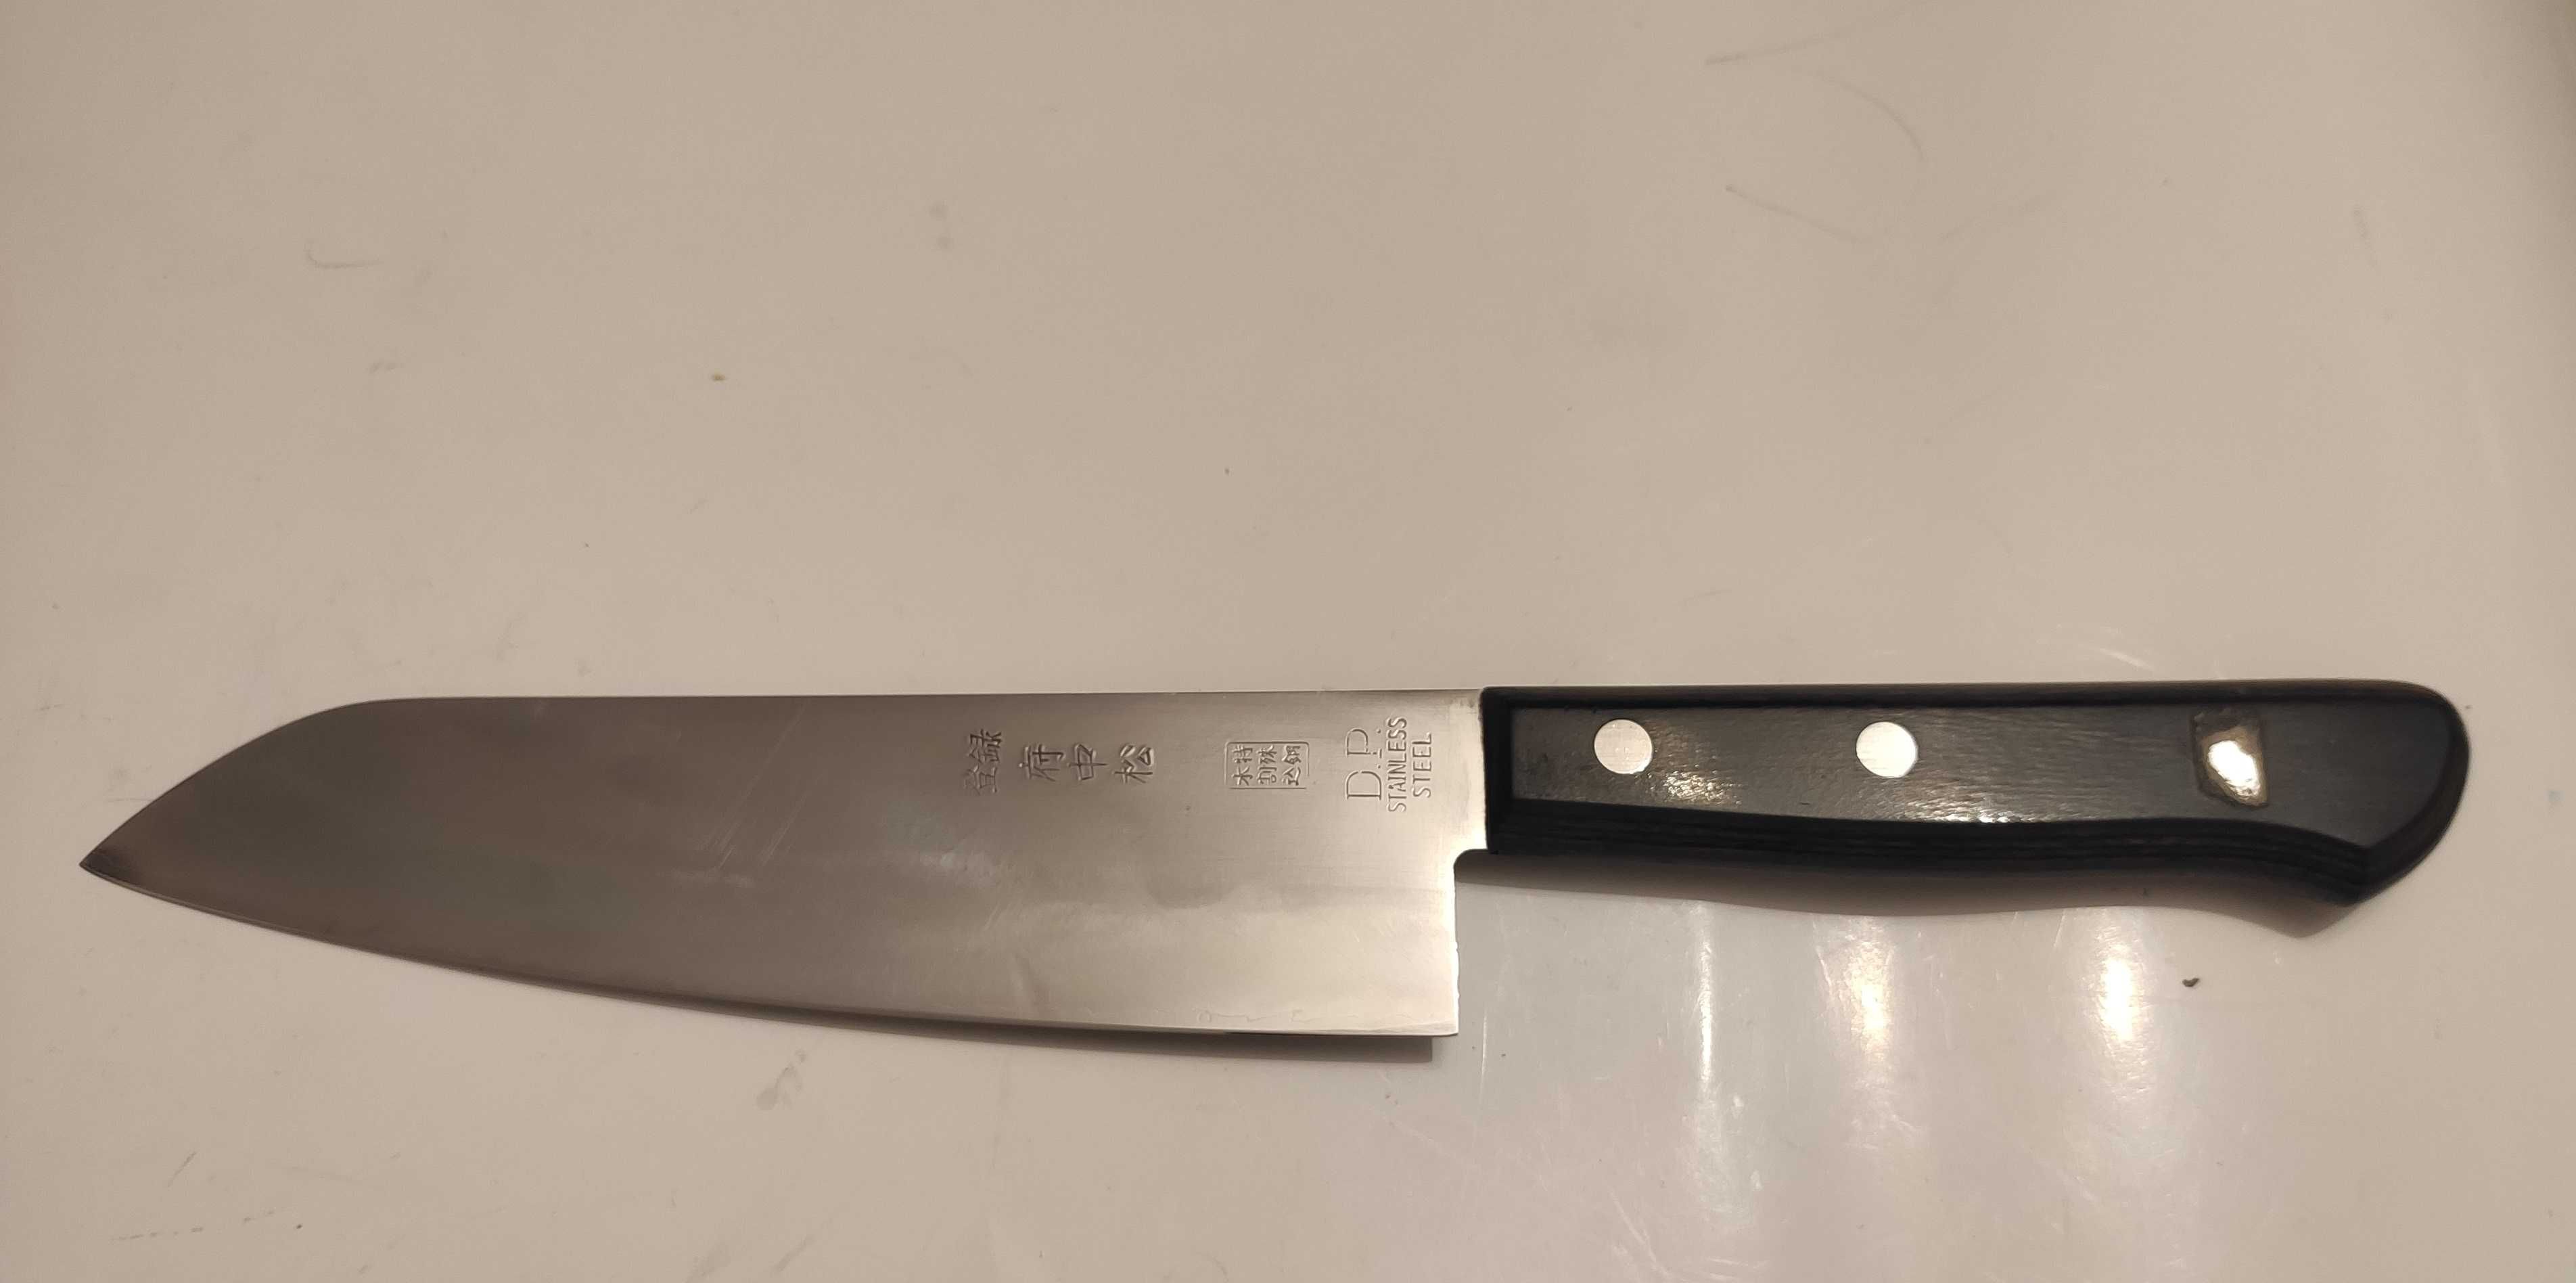 Japoński nóż typu Santoku 165 mm  kuty stal nierdzewna wysyłka olx